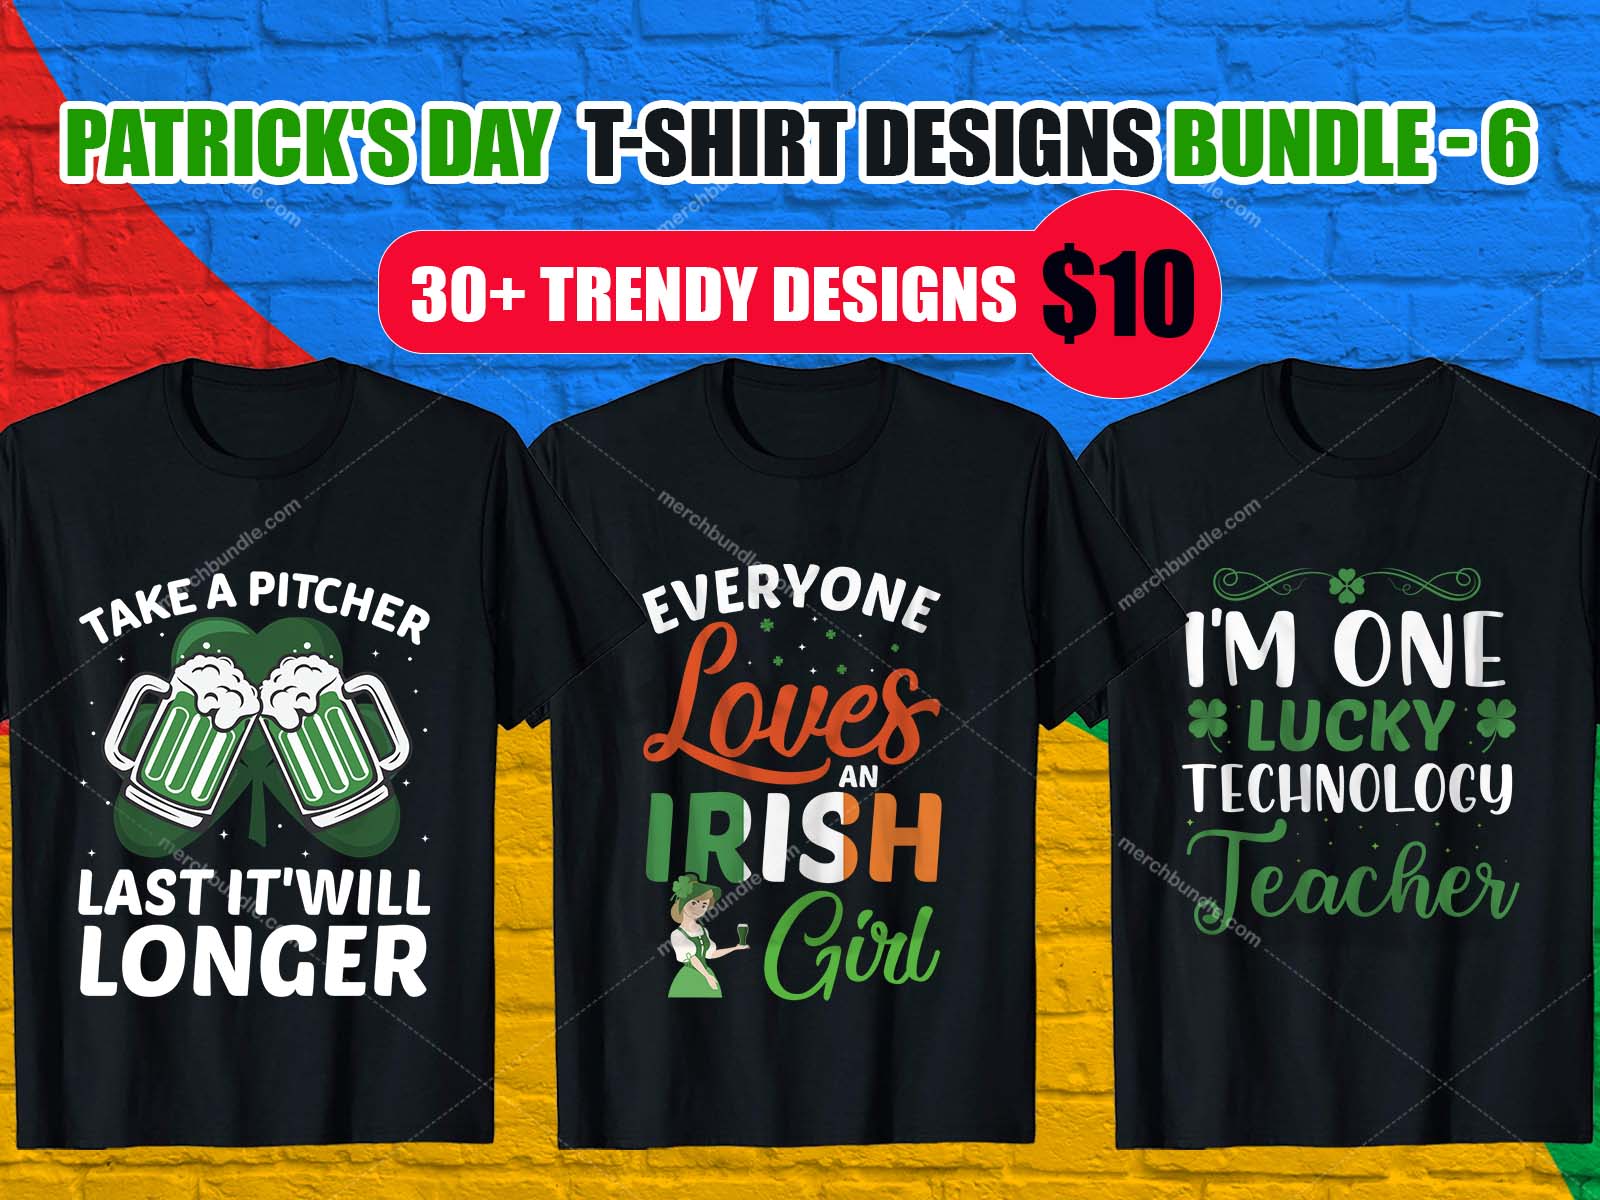 Saint Patrick's Day shirt